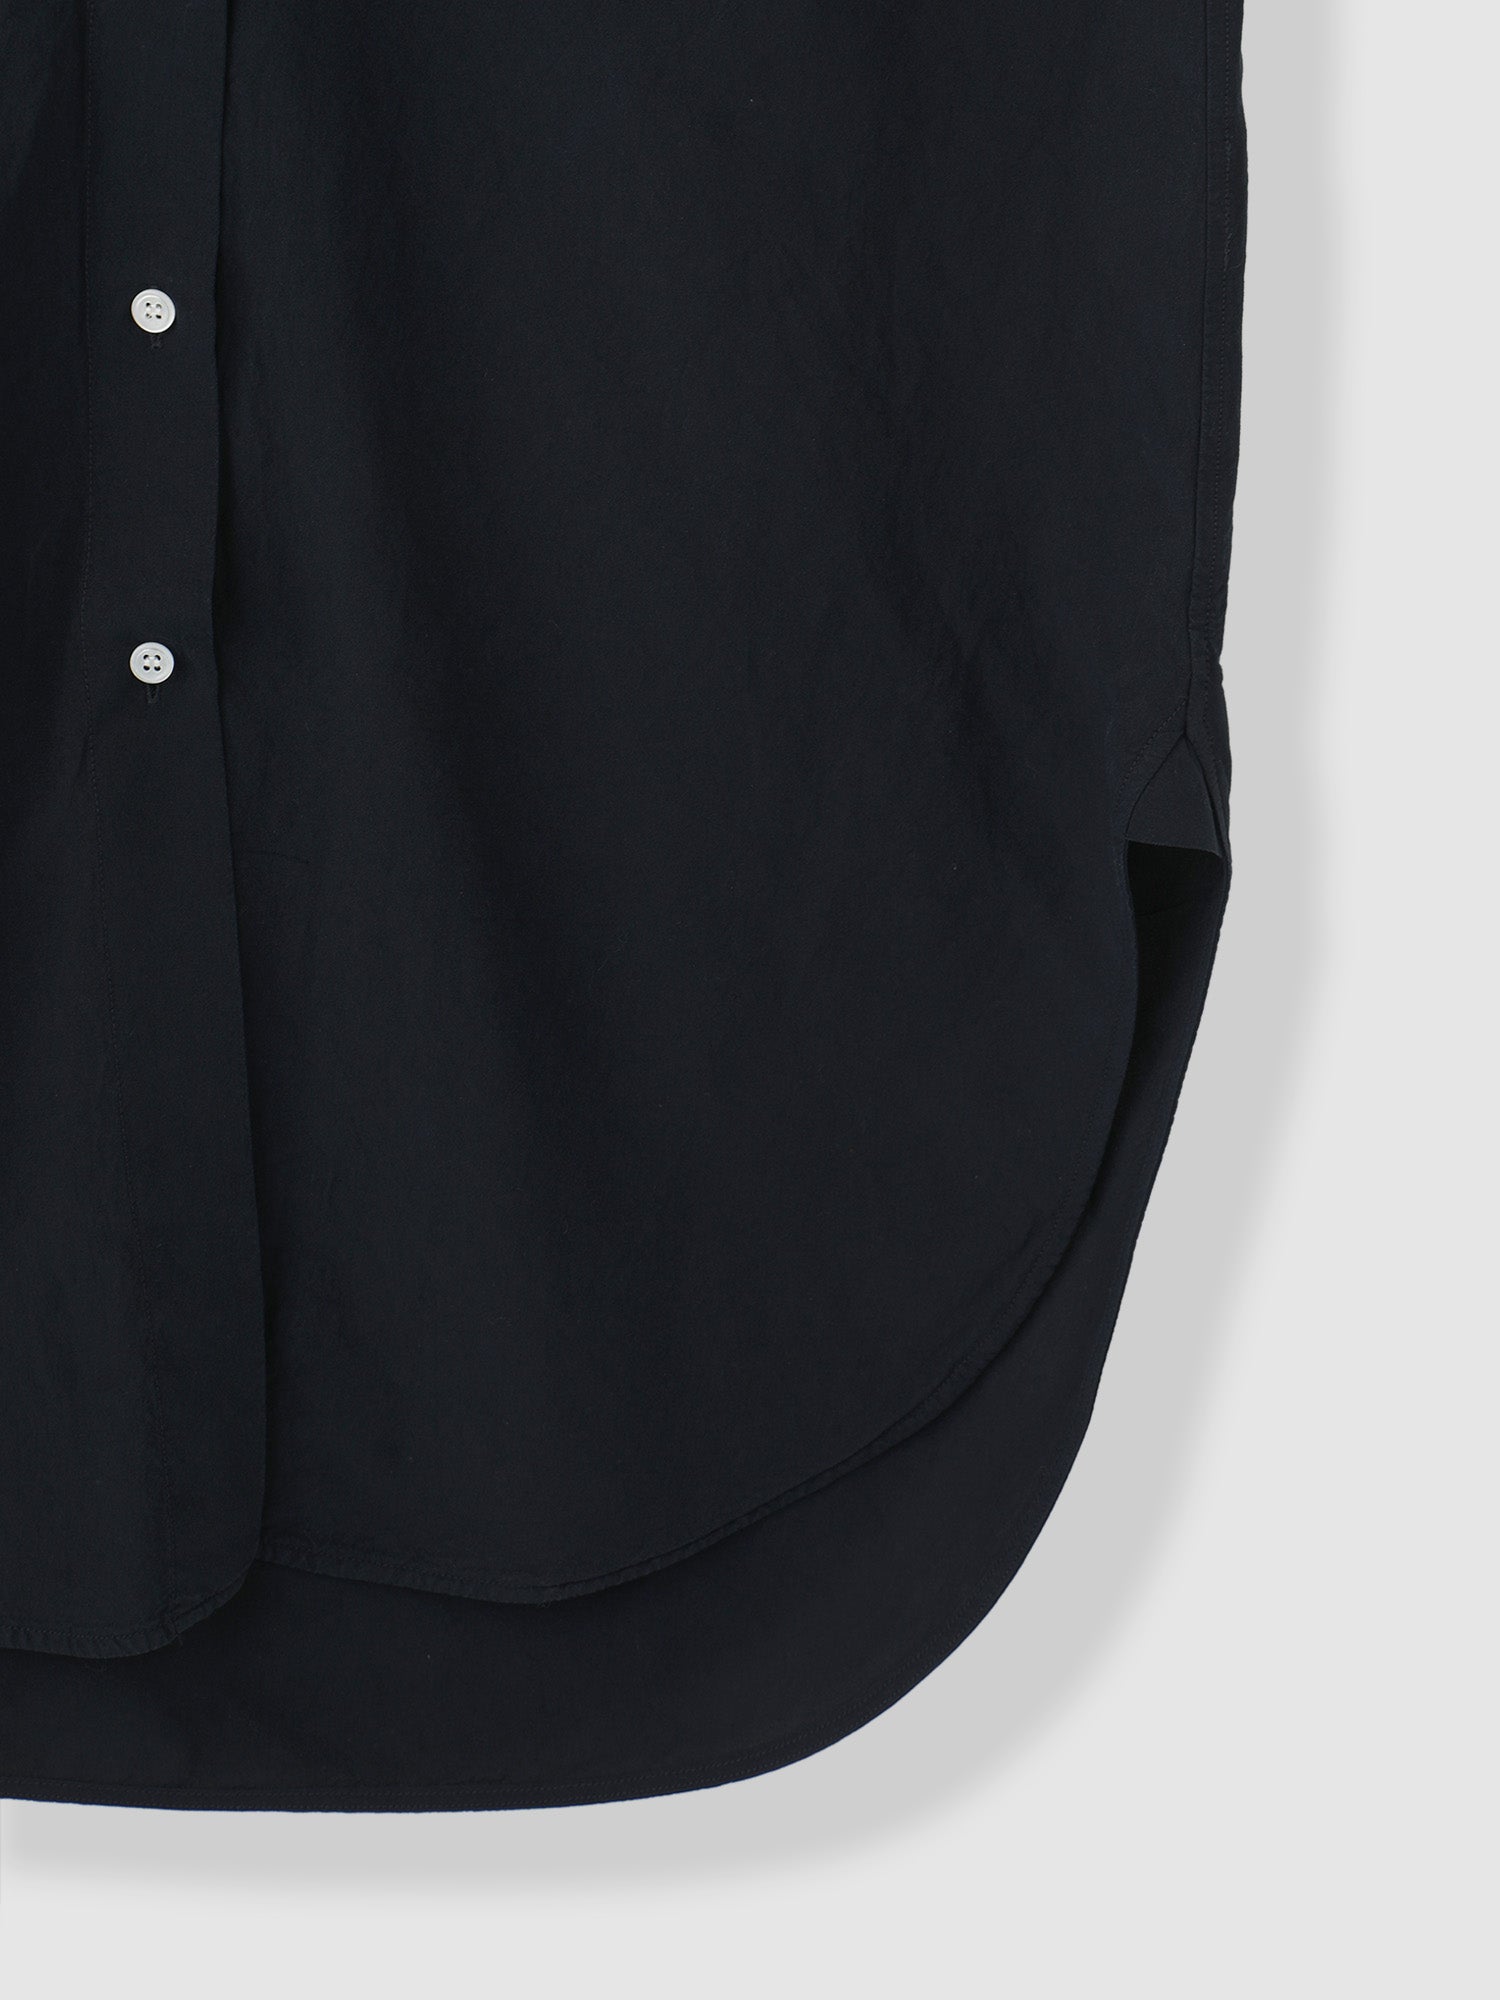 CT COLLAB BAND COLLAR SHIRTS <br> デザインと素材に拘ったバンドカラーシャツ